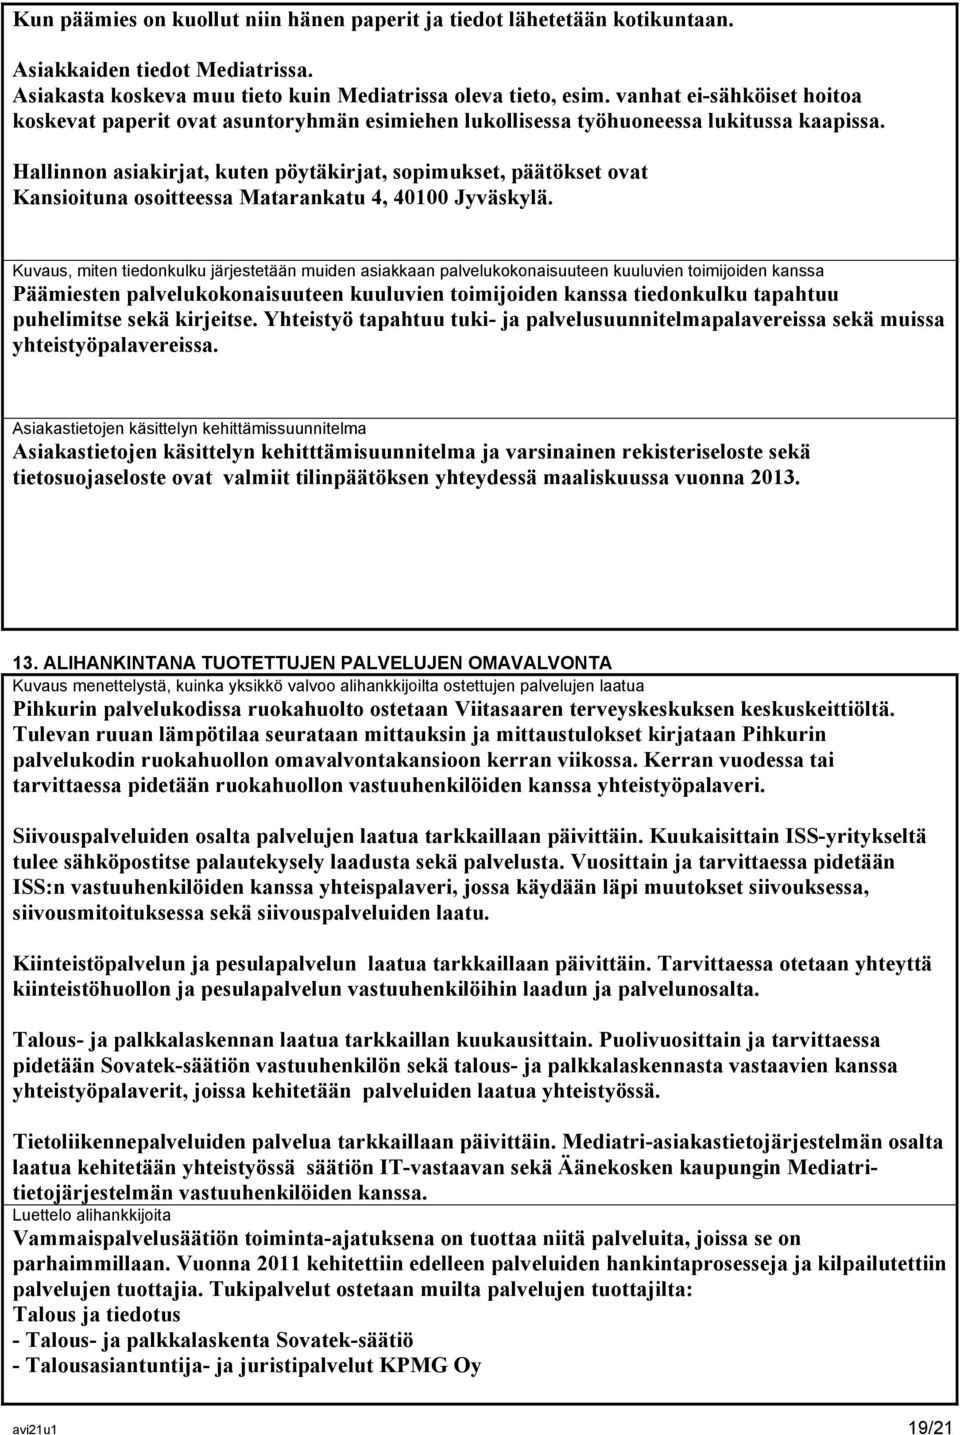 Hallinnon asiakirjat, kuten pöytäkirjat, sopimukset, päätökset ovat Kansioituna osoitteessa Matarankatu 4, 40100 Jyväskylä.